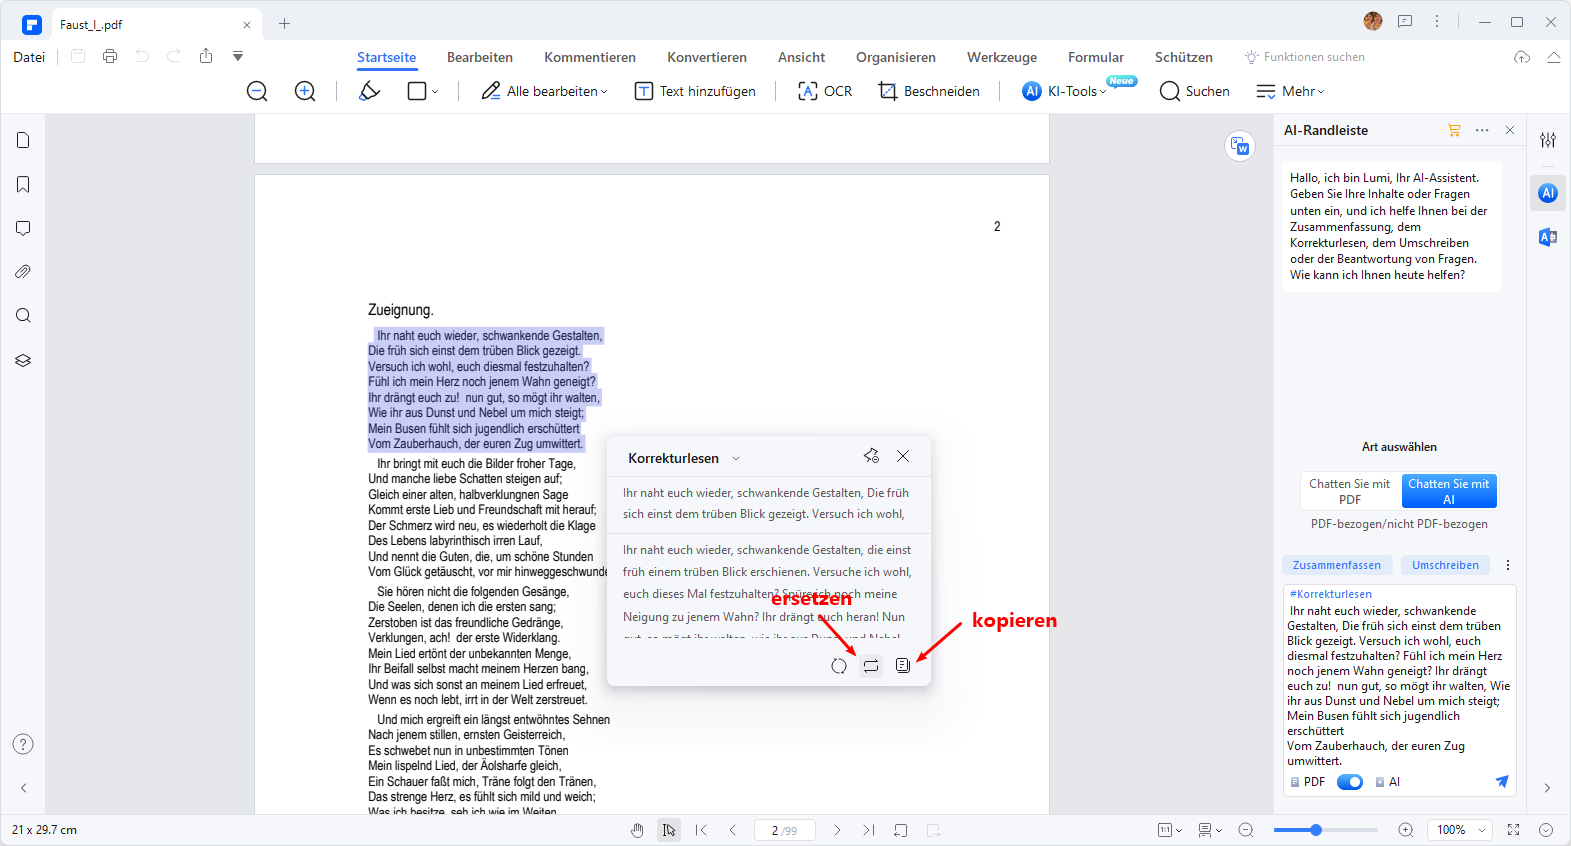 Sobald das Korrekturlesen abgeschlossen ist, stellt Lumi umgehend die verbesserte Version zur Verfügung. Über das Symbol "Ersetzen" können Sie den Originaltext direkt durch die korrigierte Version ersetzen. Alternativ können Sie den korrigierten Text mit der Klicken auf die Schaltfläche "Kopieren" kopieren und mühelos in Ihr aktuelles PDF oder ein neues Dokument einfügen, um ihn sofort zu verwenden.